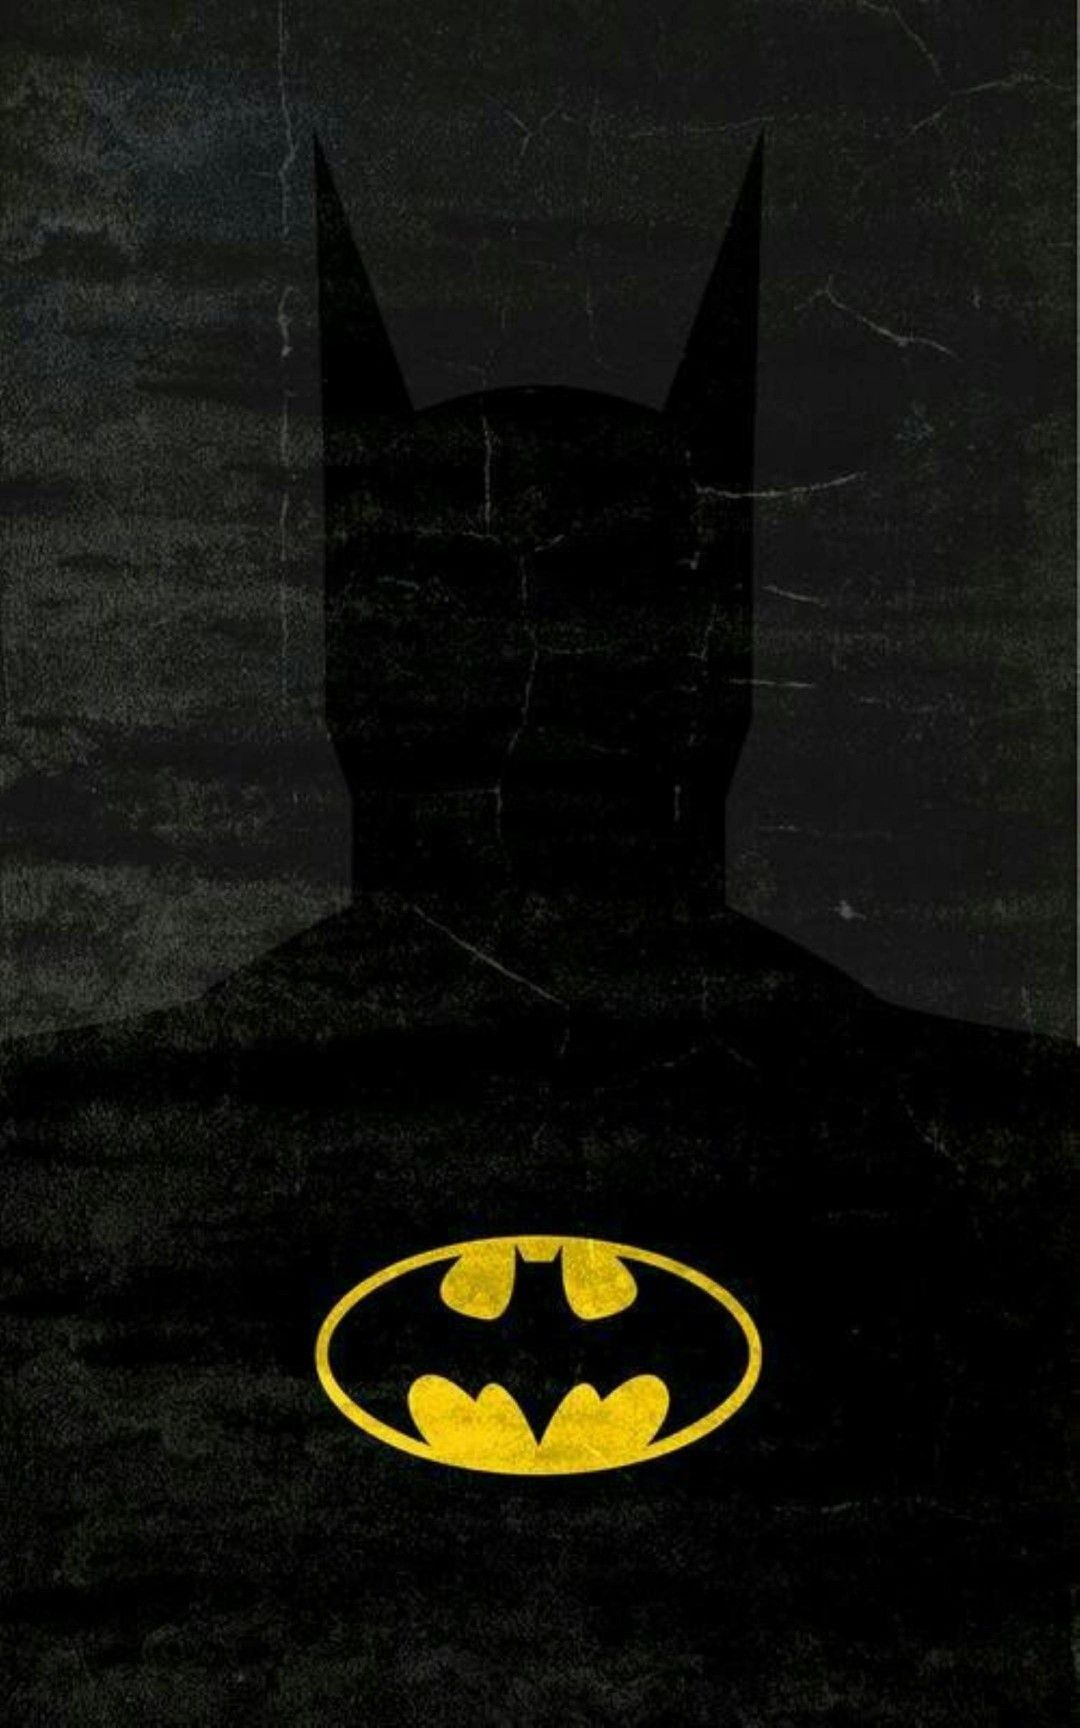 Batman wallpaper. Batman wallpaper